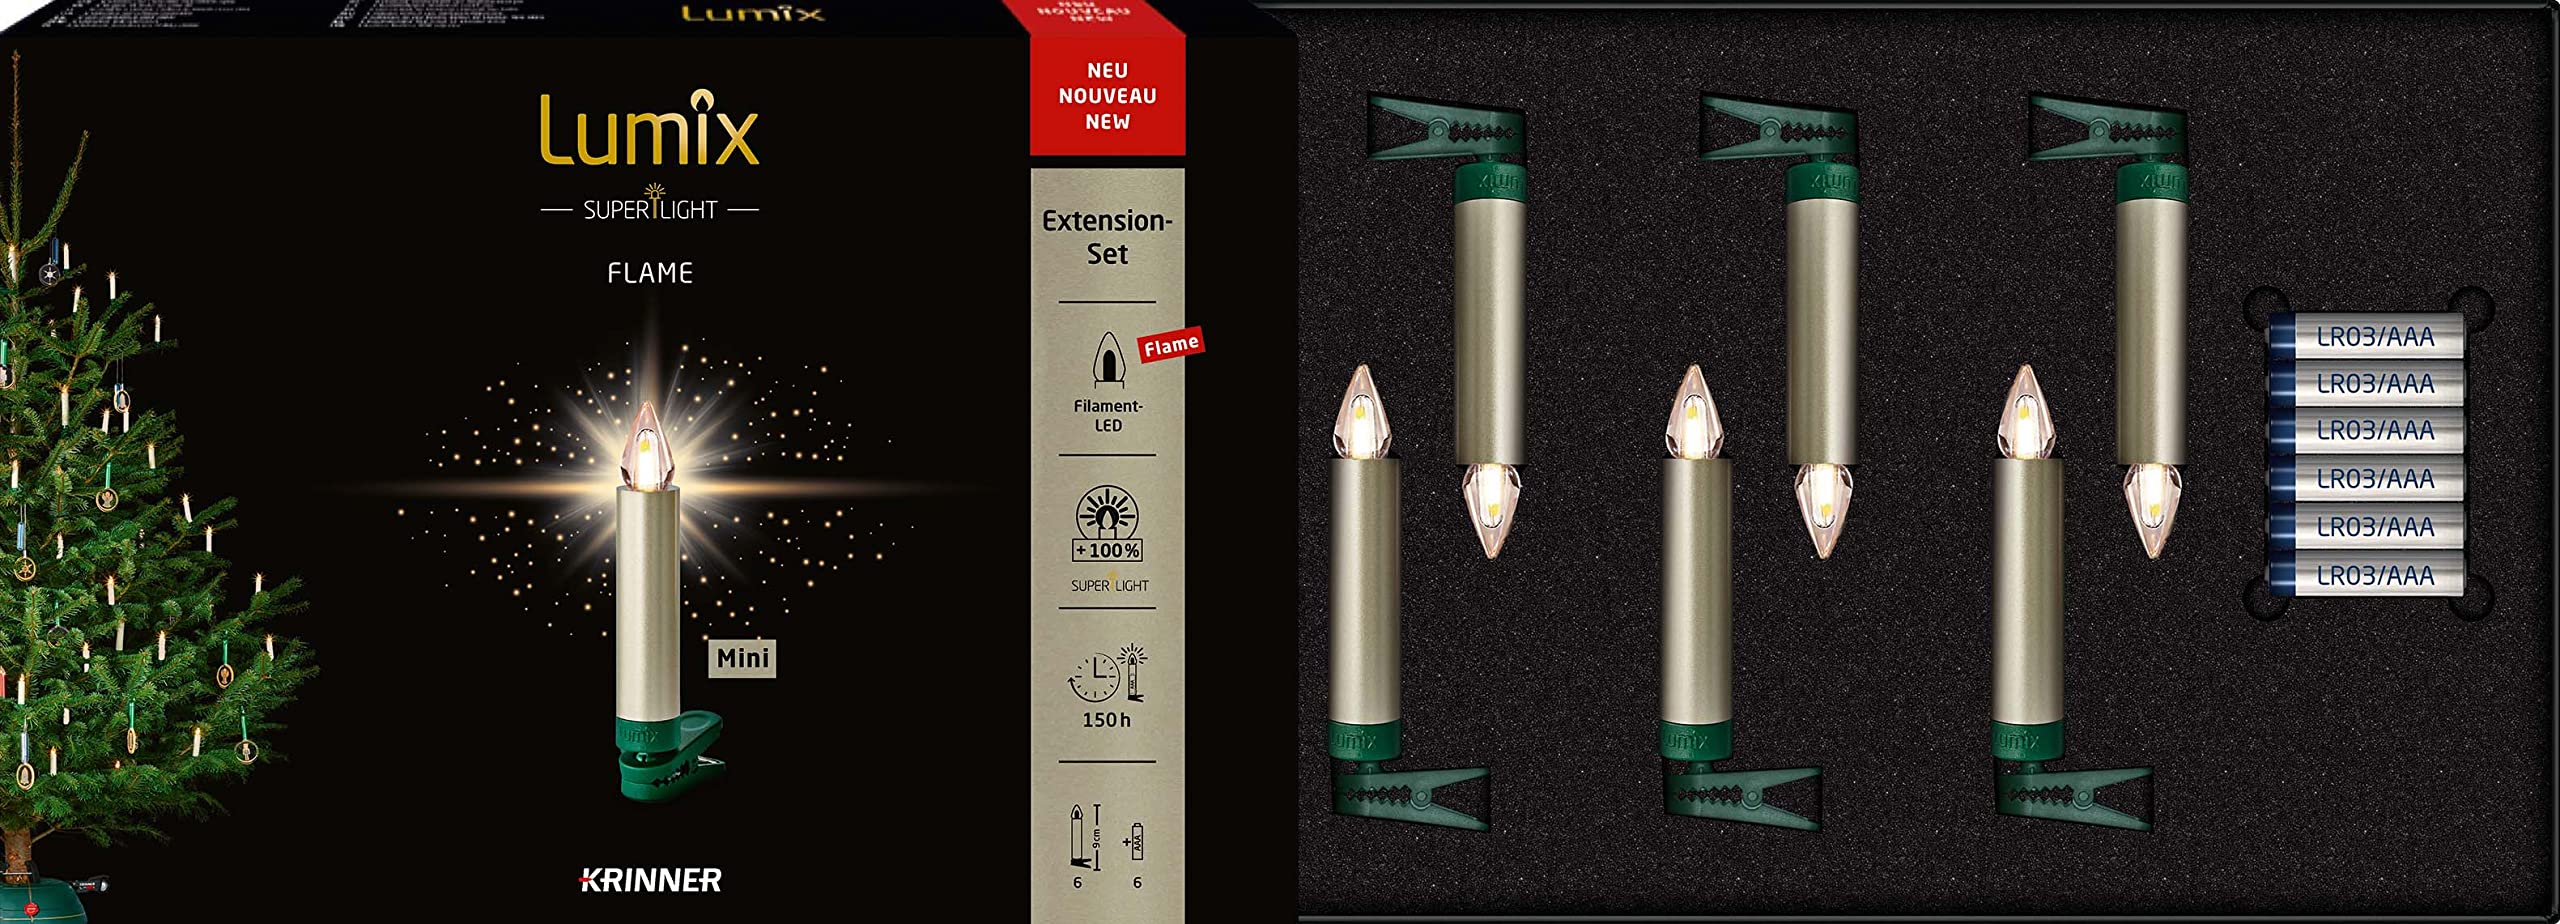 Lumix® kabellose LED Christbaumkerzen Weihnachtsbaumkerzen 6er Erweiterungs-Set SuperLight Flame Metallic Mini Cashmere 9cm warmweiß 77155